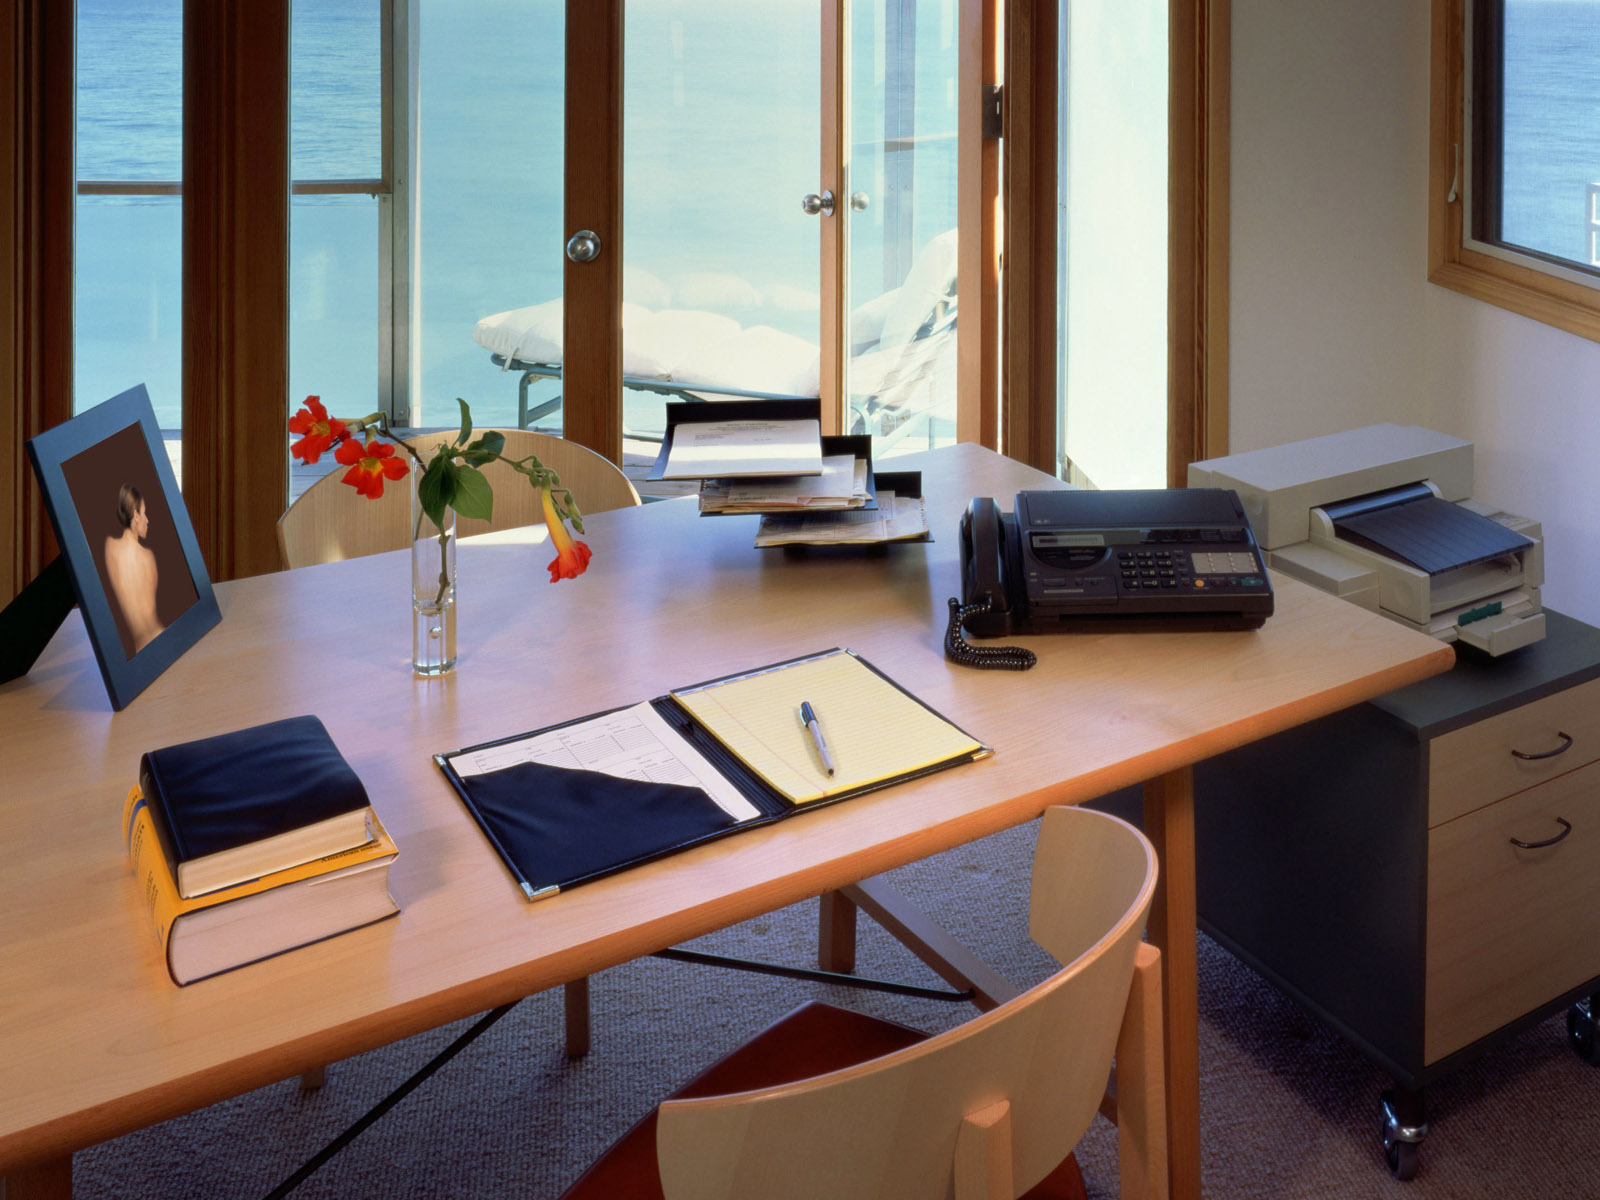 Убирать столы для посетителей необходимо. Стол для офиса. Рабочее место в офисе. Стол рабочий офисный. Идеальное рабочее место.